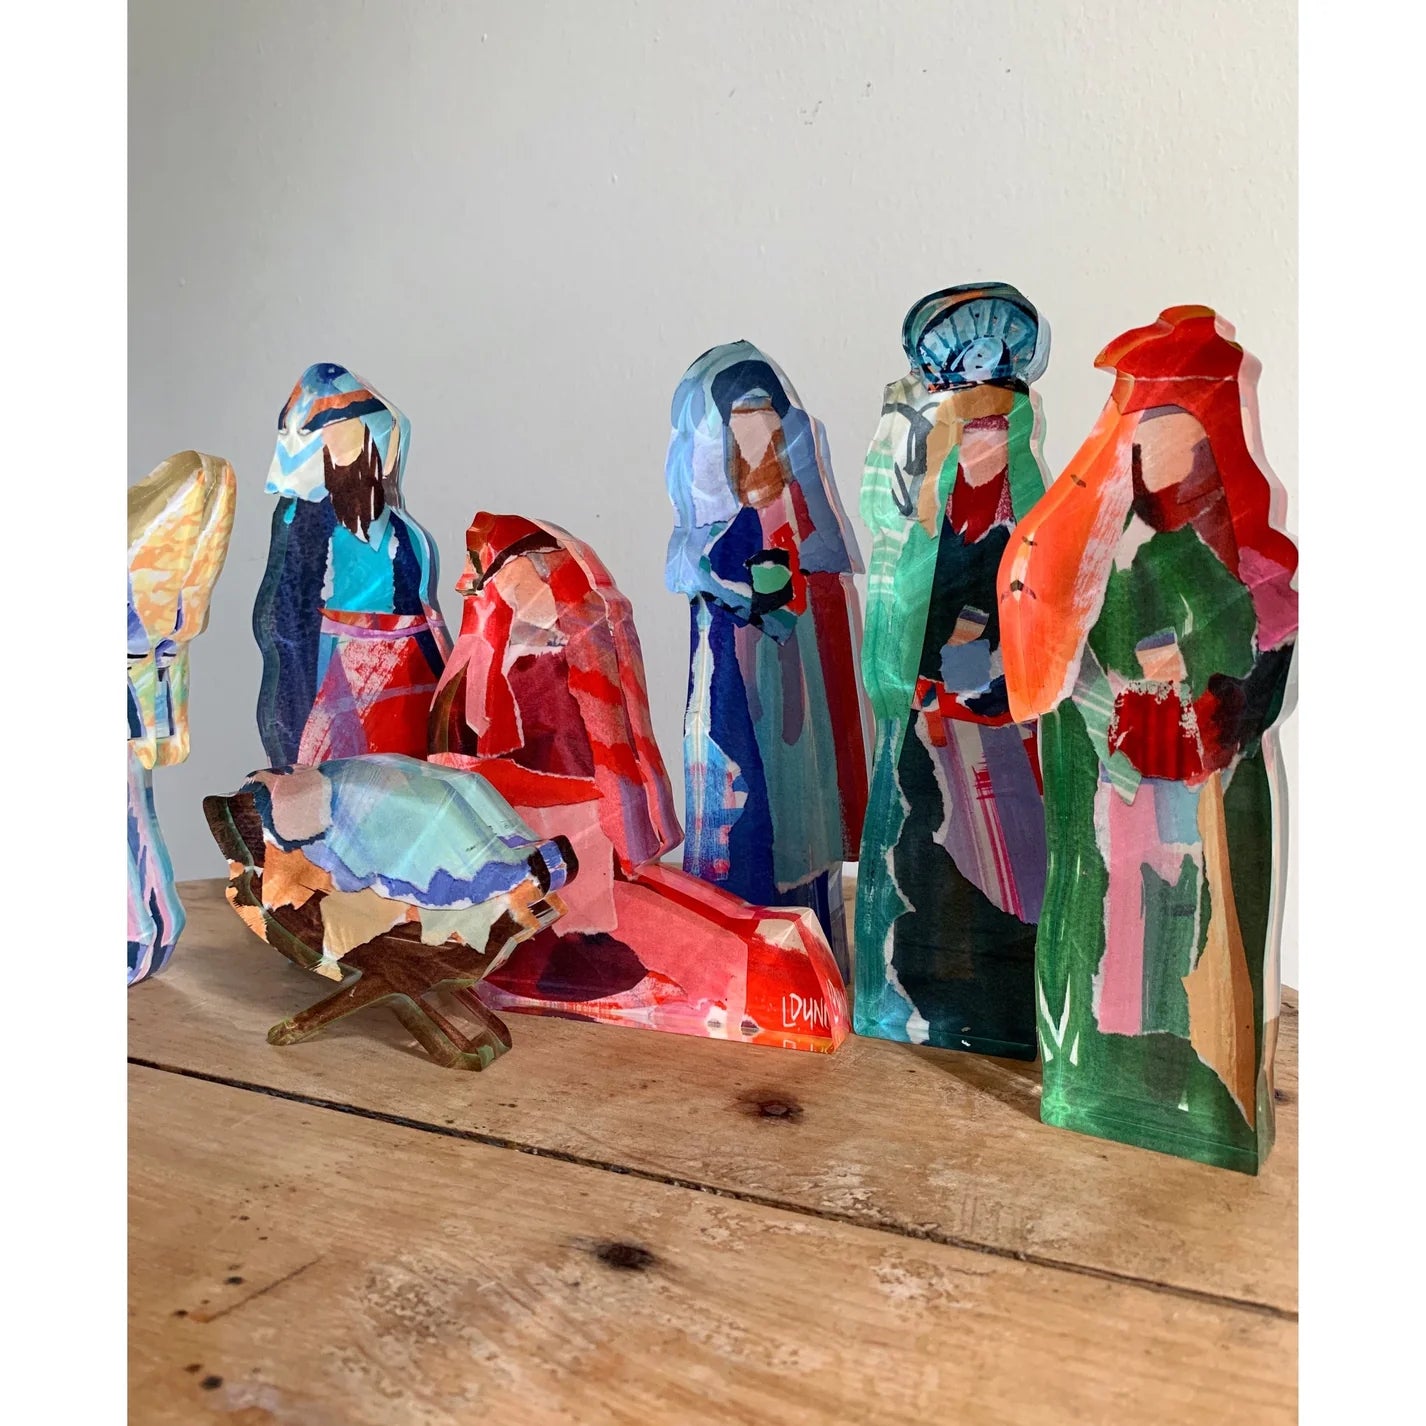 Acrylic Nativity Set, Small